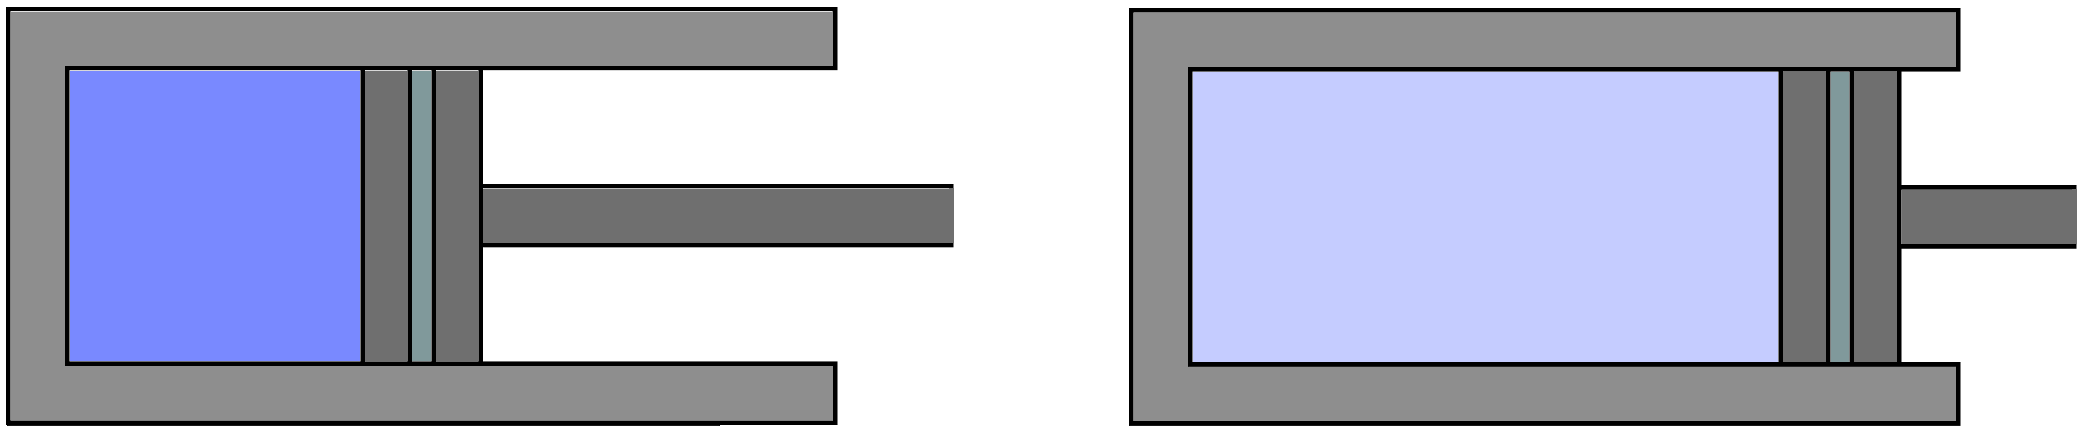 4 Yllä oleva kuva esittää tilanetta ennen laajentamisen/lämmittämisen aloittamista, ja sen jälkeen. Kaasu on laajentunut alkutilavuudesta V 1 lopputilavuuteen V 2.